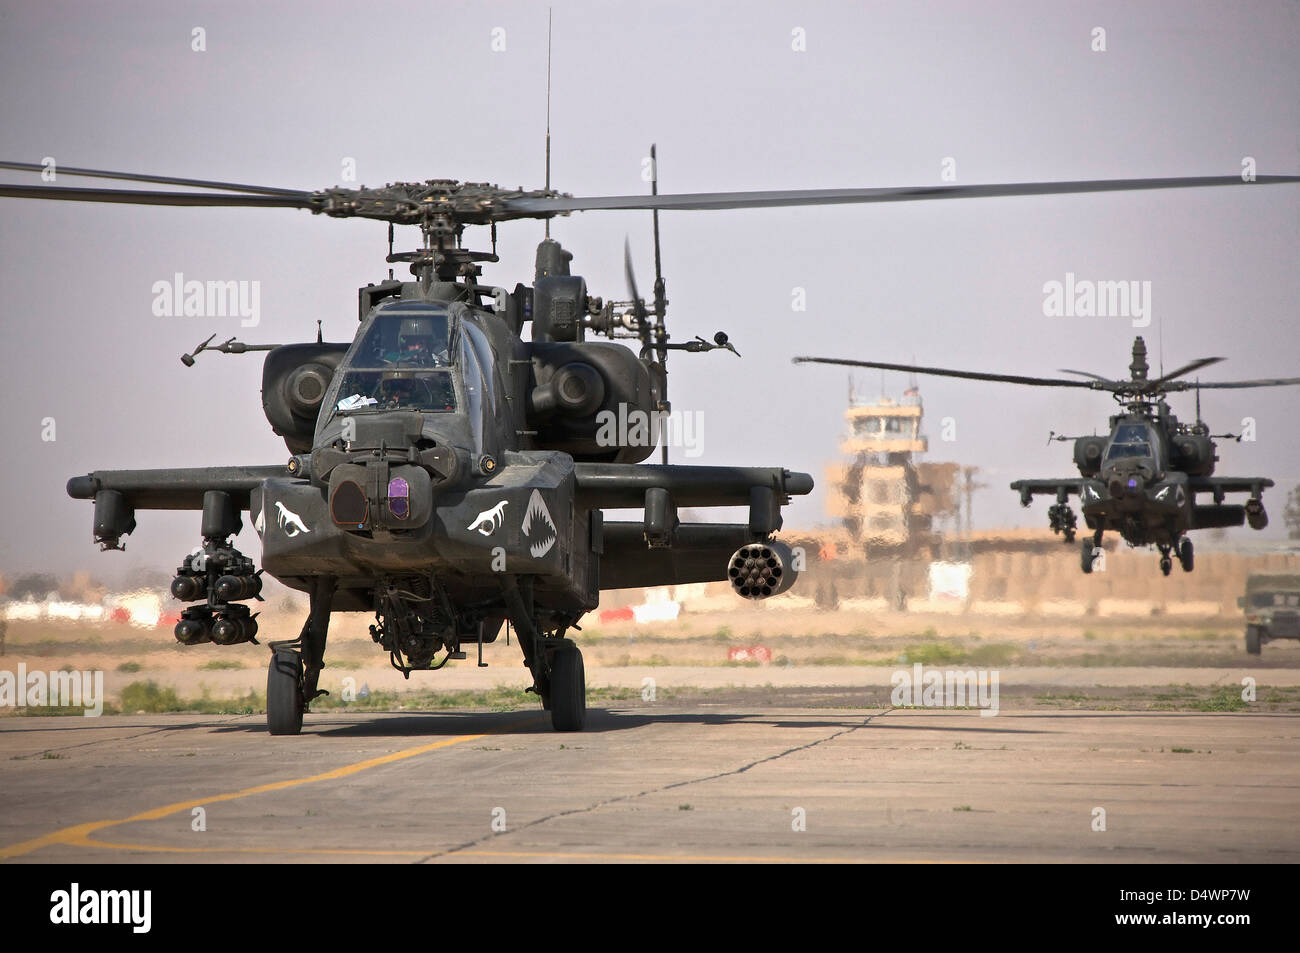 Dos helicópteros Apache AH-64 regreso de una misión en el norte de Irak durante la Operación Libertad Iraquí. Foto de stock